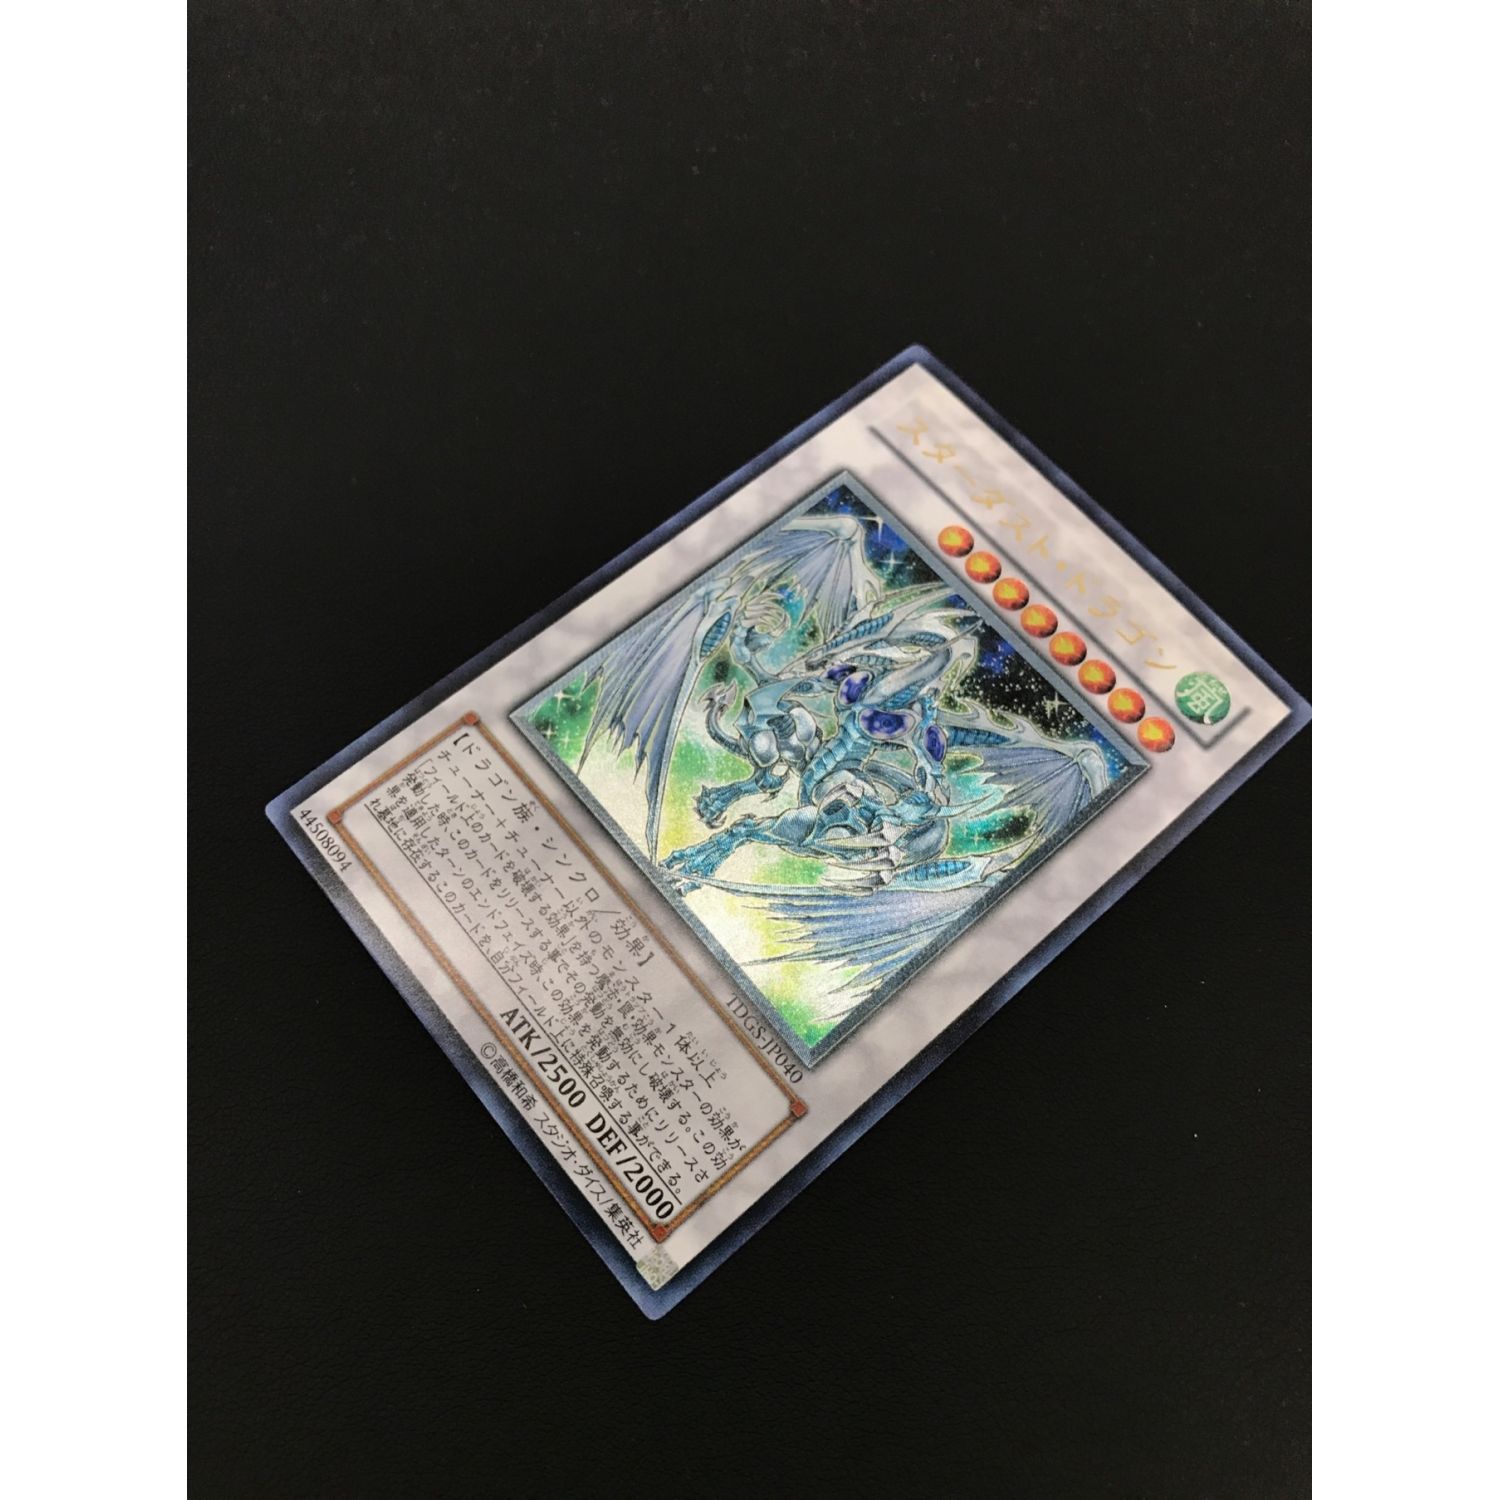 遊戯王カード スターダスト・ドラゴン TDGS-JP040 アルティメットレア 